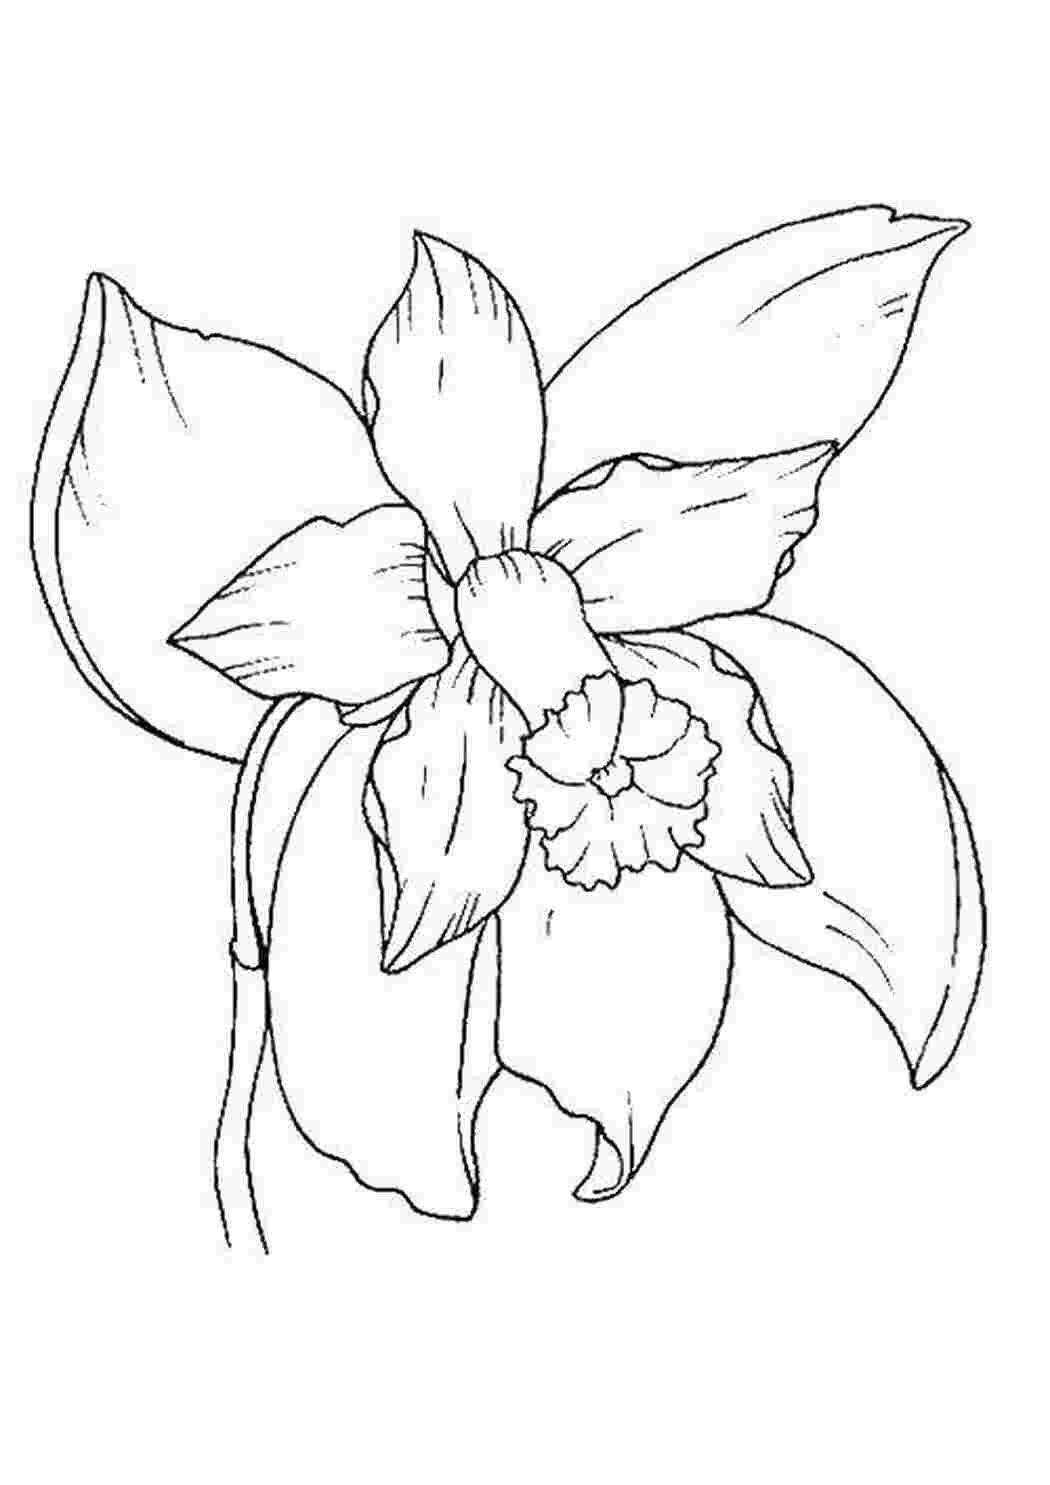 Раскраска цветы орхидеи